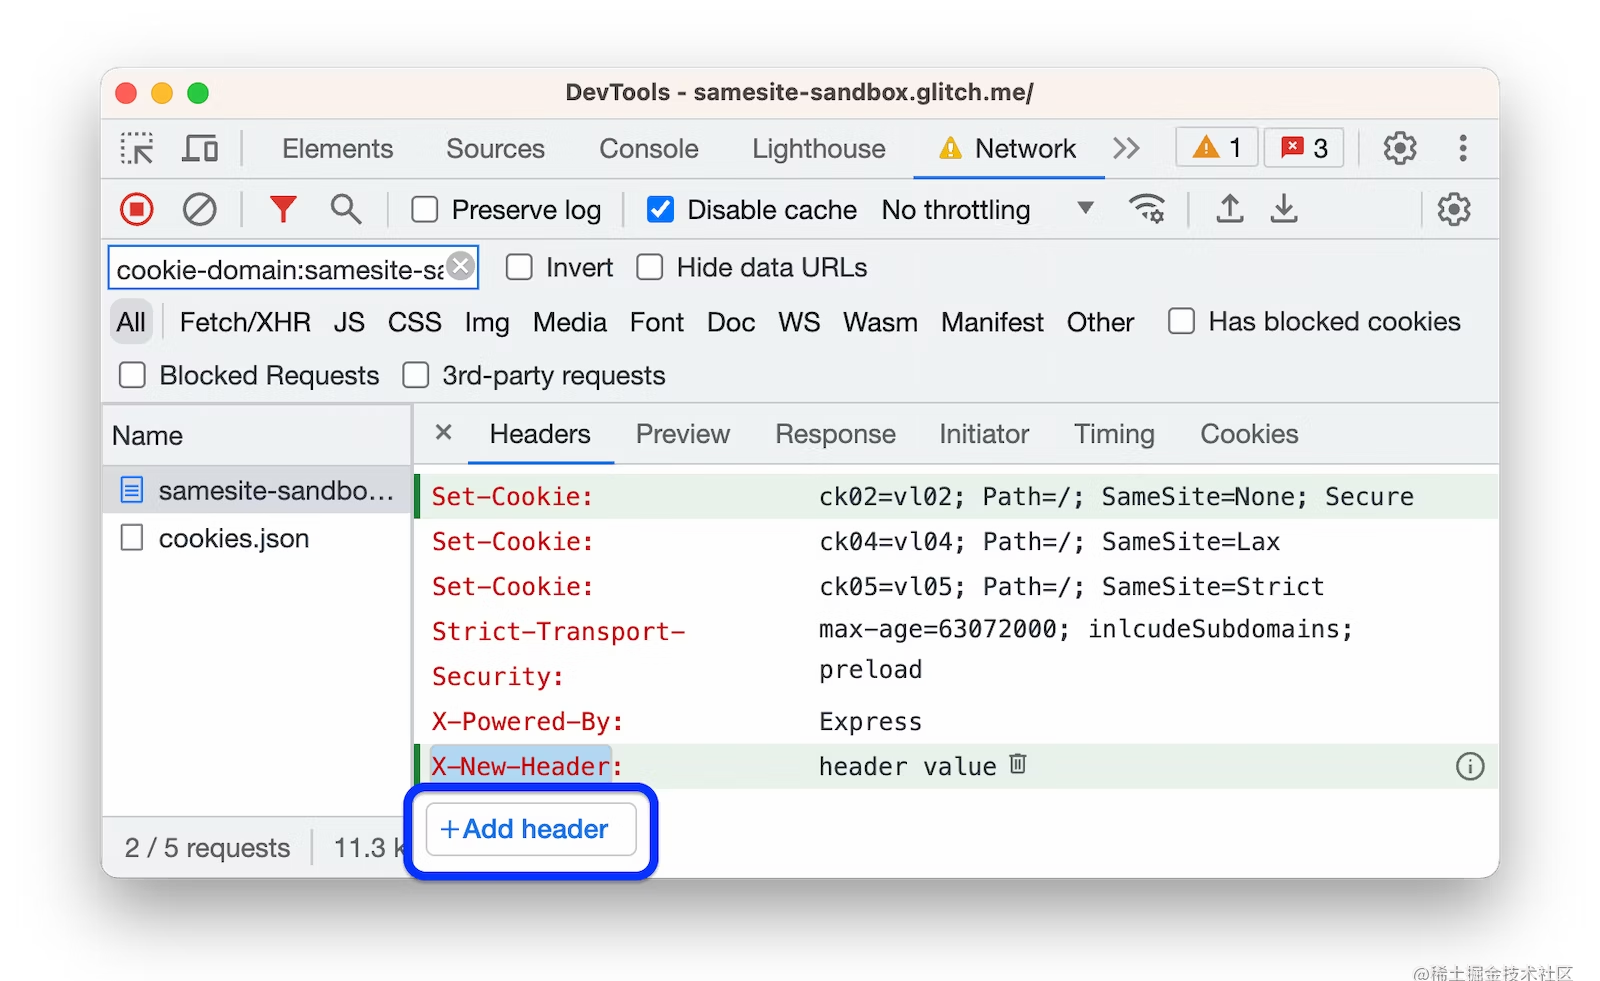 Chrome113 支持修改 Header 和隐藏错误堆栈